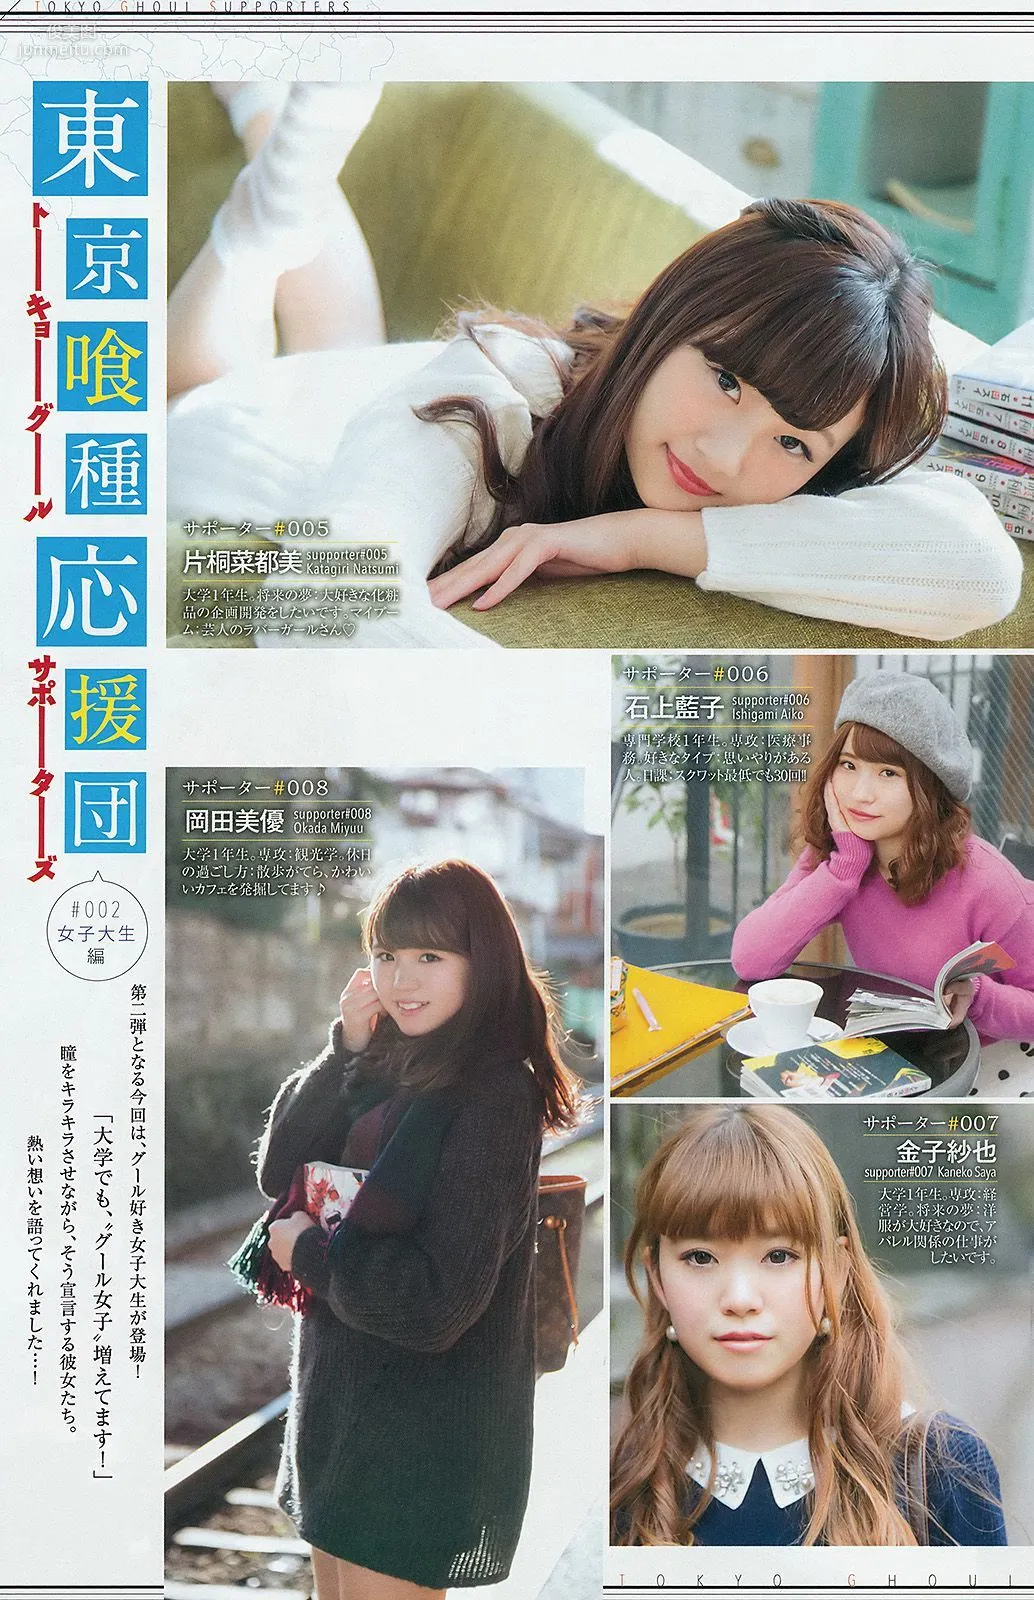 最上もが 藤澤季美歌 [Weekly Young Jump 週刊ヤングジャンプ] 2015年No.10 写真杂志10